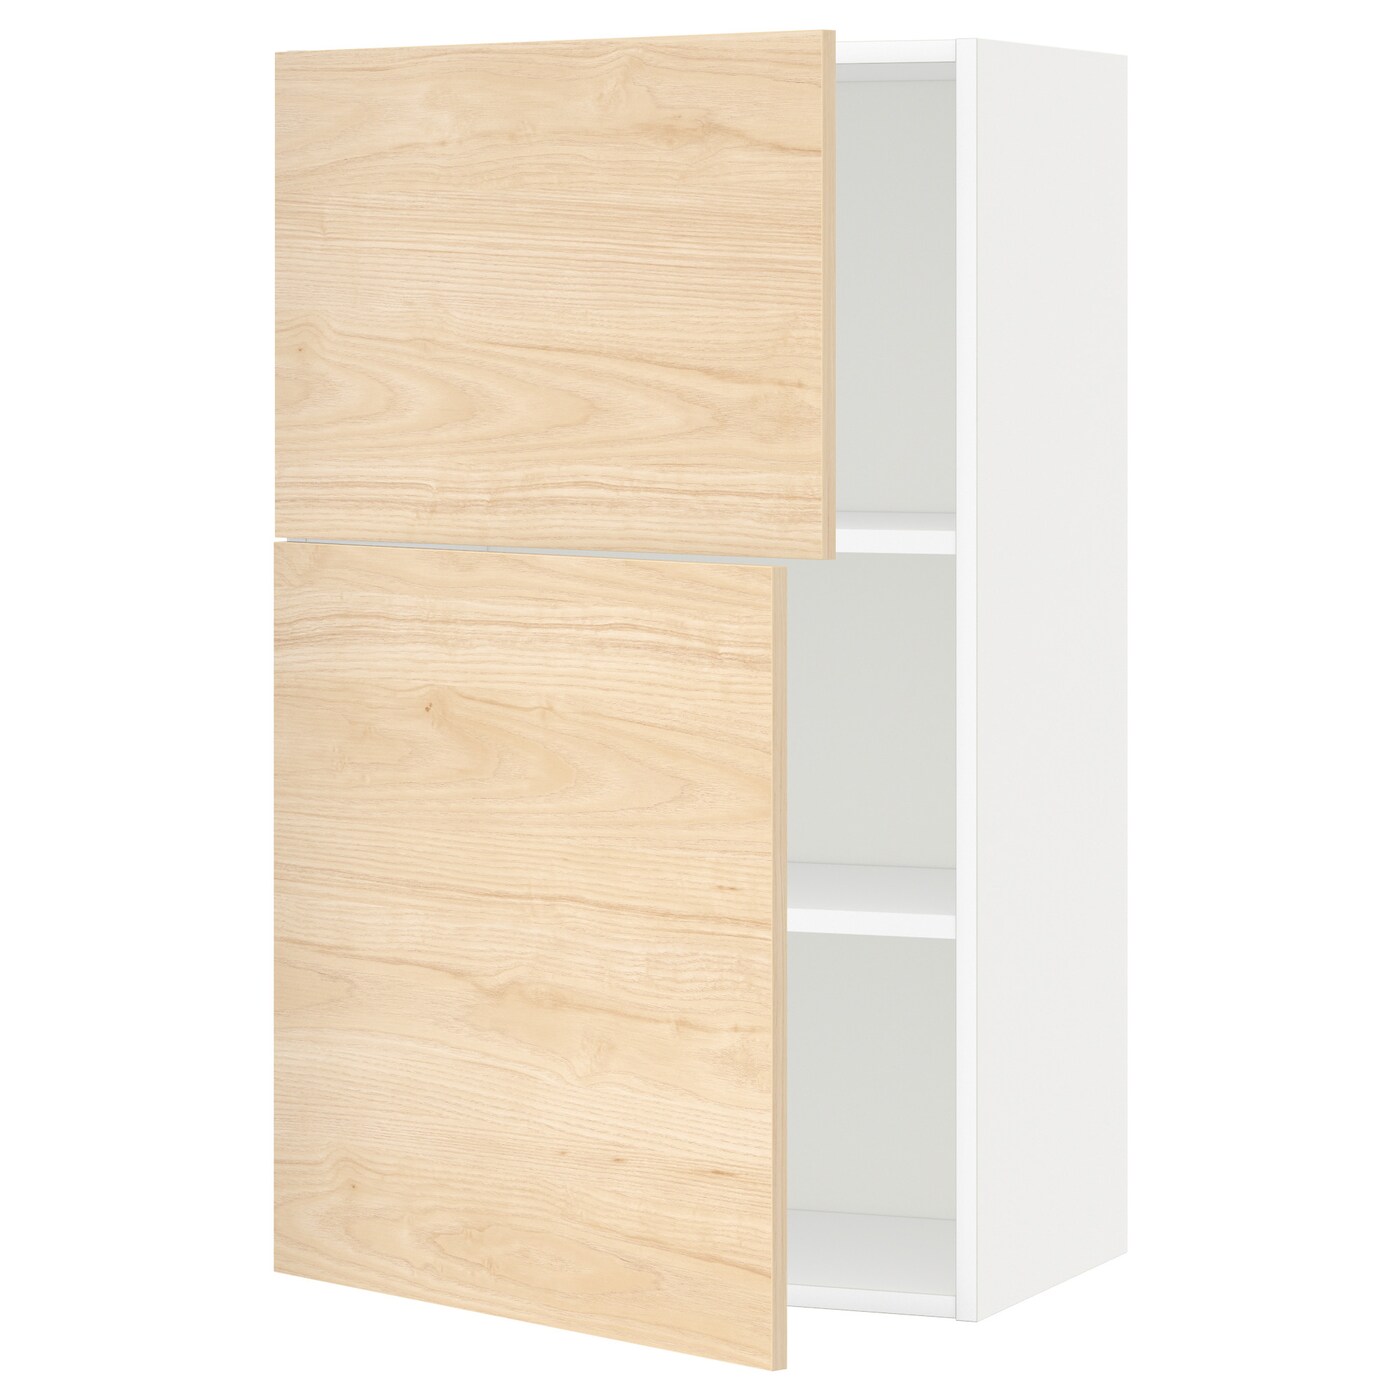 Навесной шкаф с полкой - METOD IKEA/ МЕТОД ИКЕА, 100х60 см,  белый/под беленый дуб